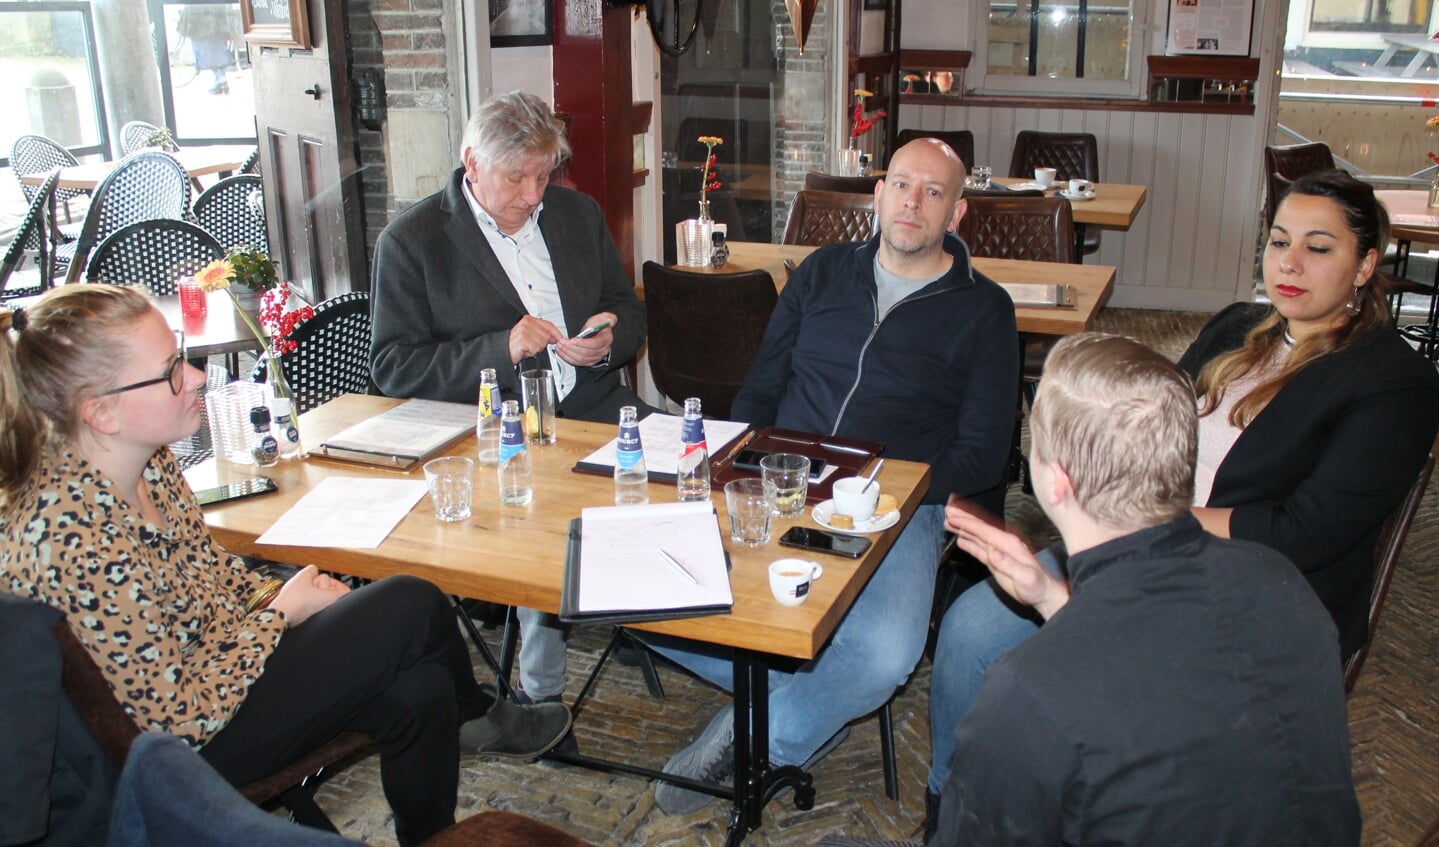 De jury bespreekt diverse criteria met de deelnemers aan de verkiezing. Zoals hier bij De Waegh in Monnickendam. 